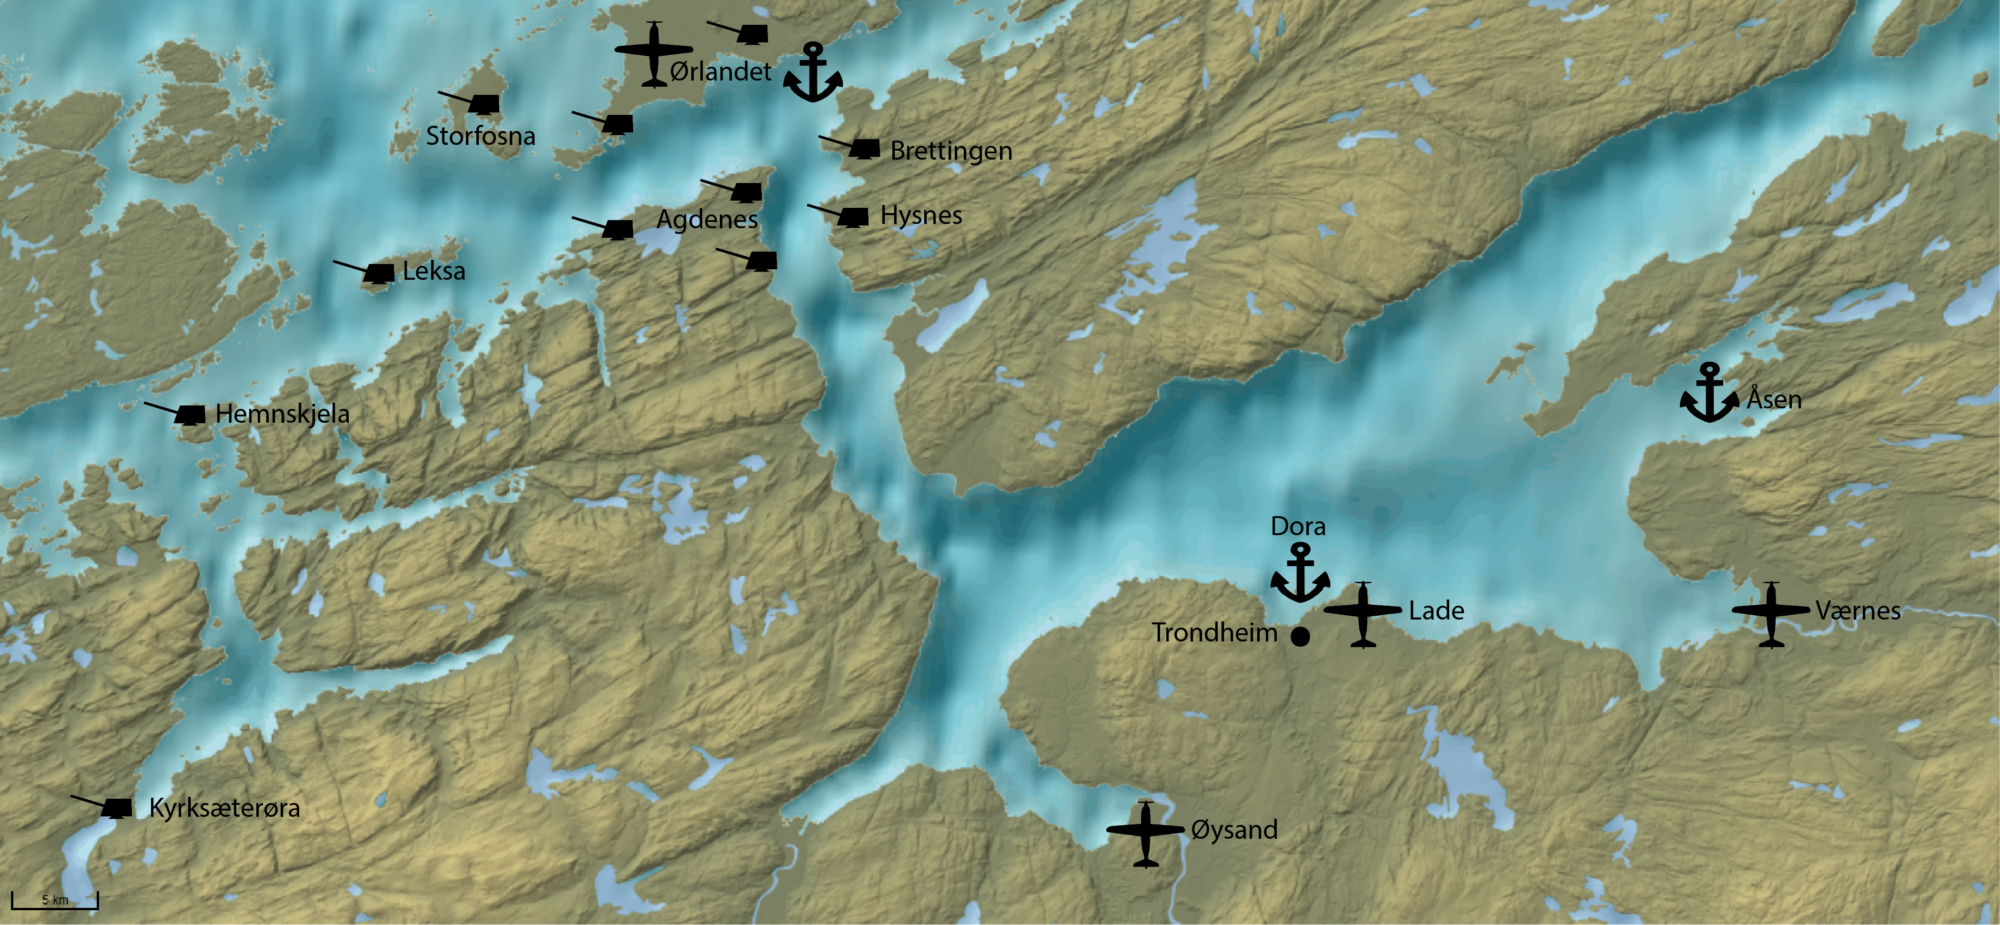 Kart over fjorden med de viktigste kystfortene, havnebasene og flyplassene markert. Kart: Kristoffer Grini